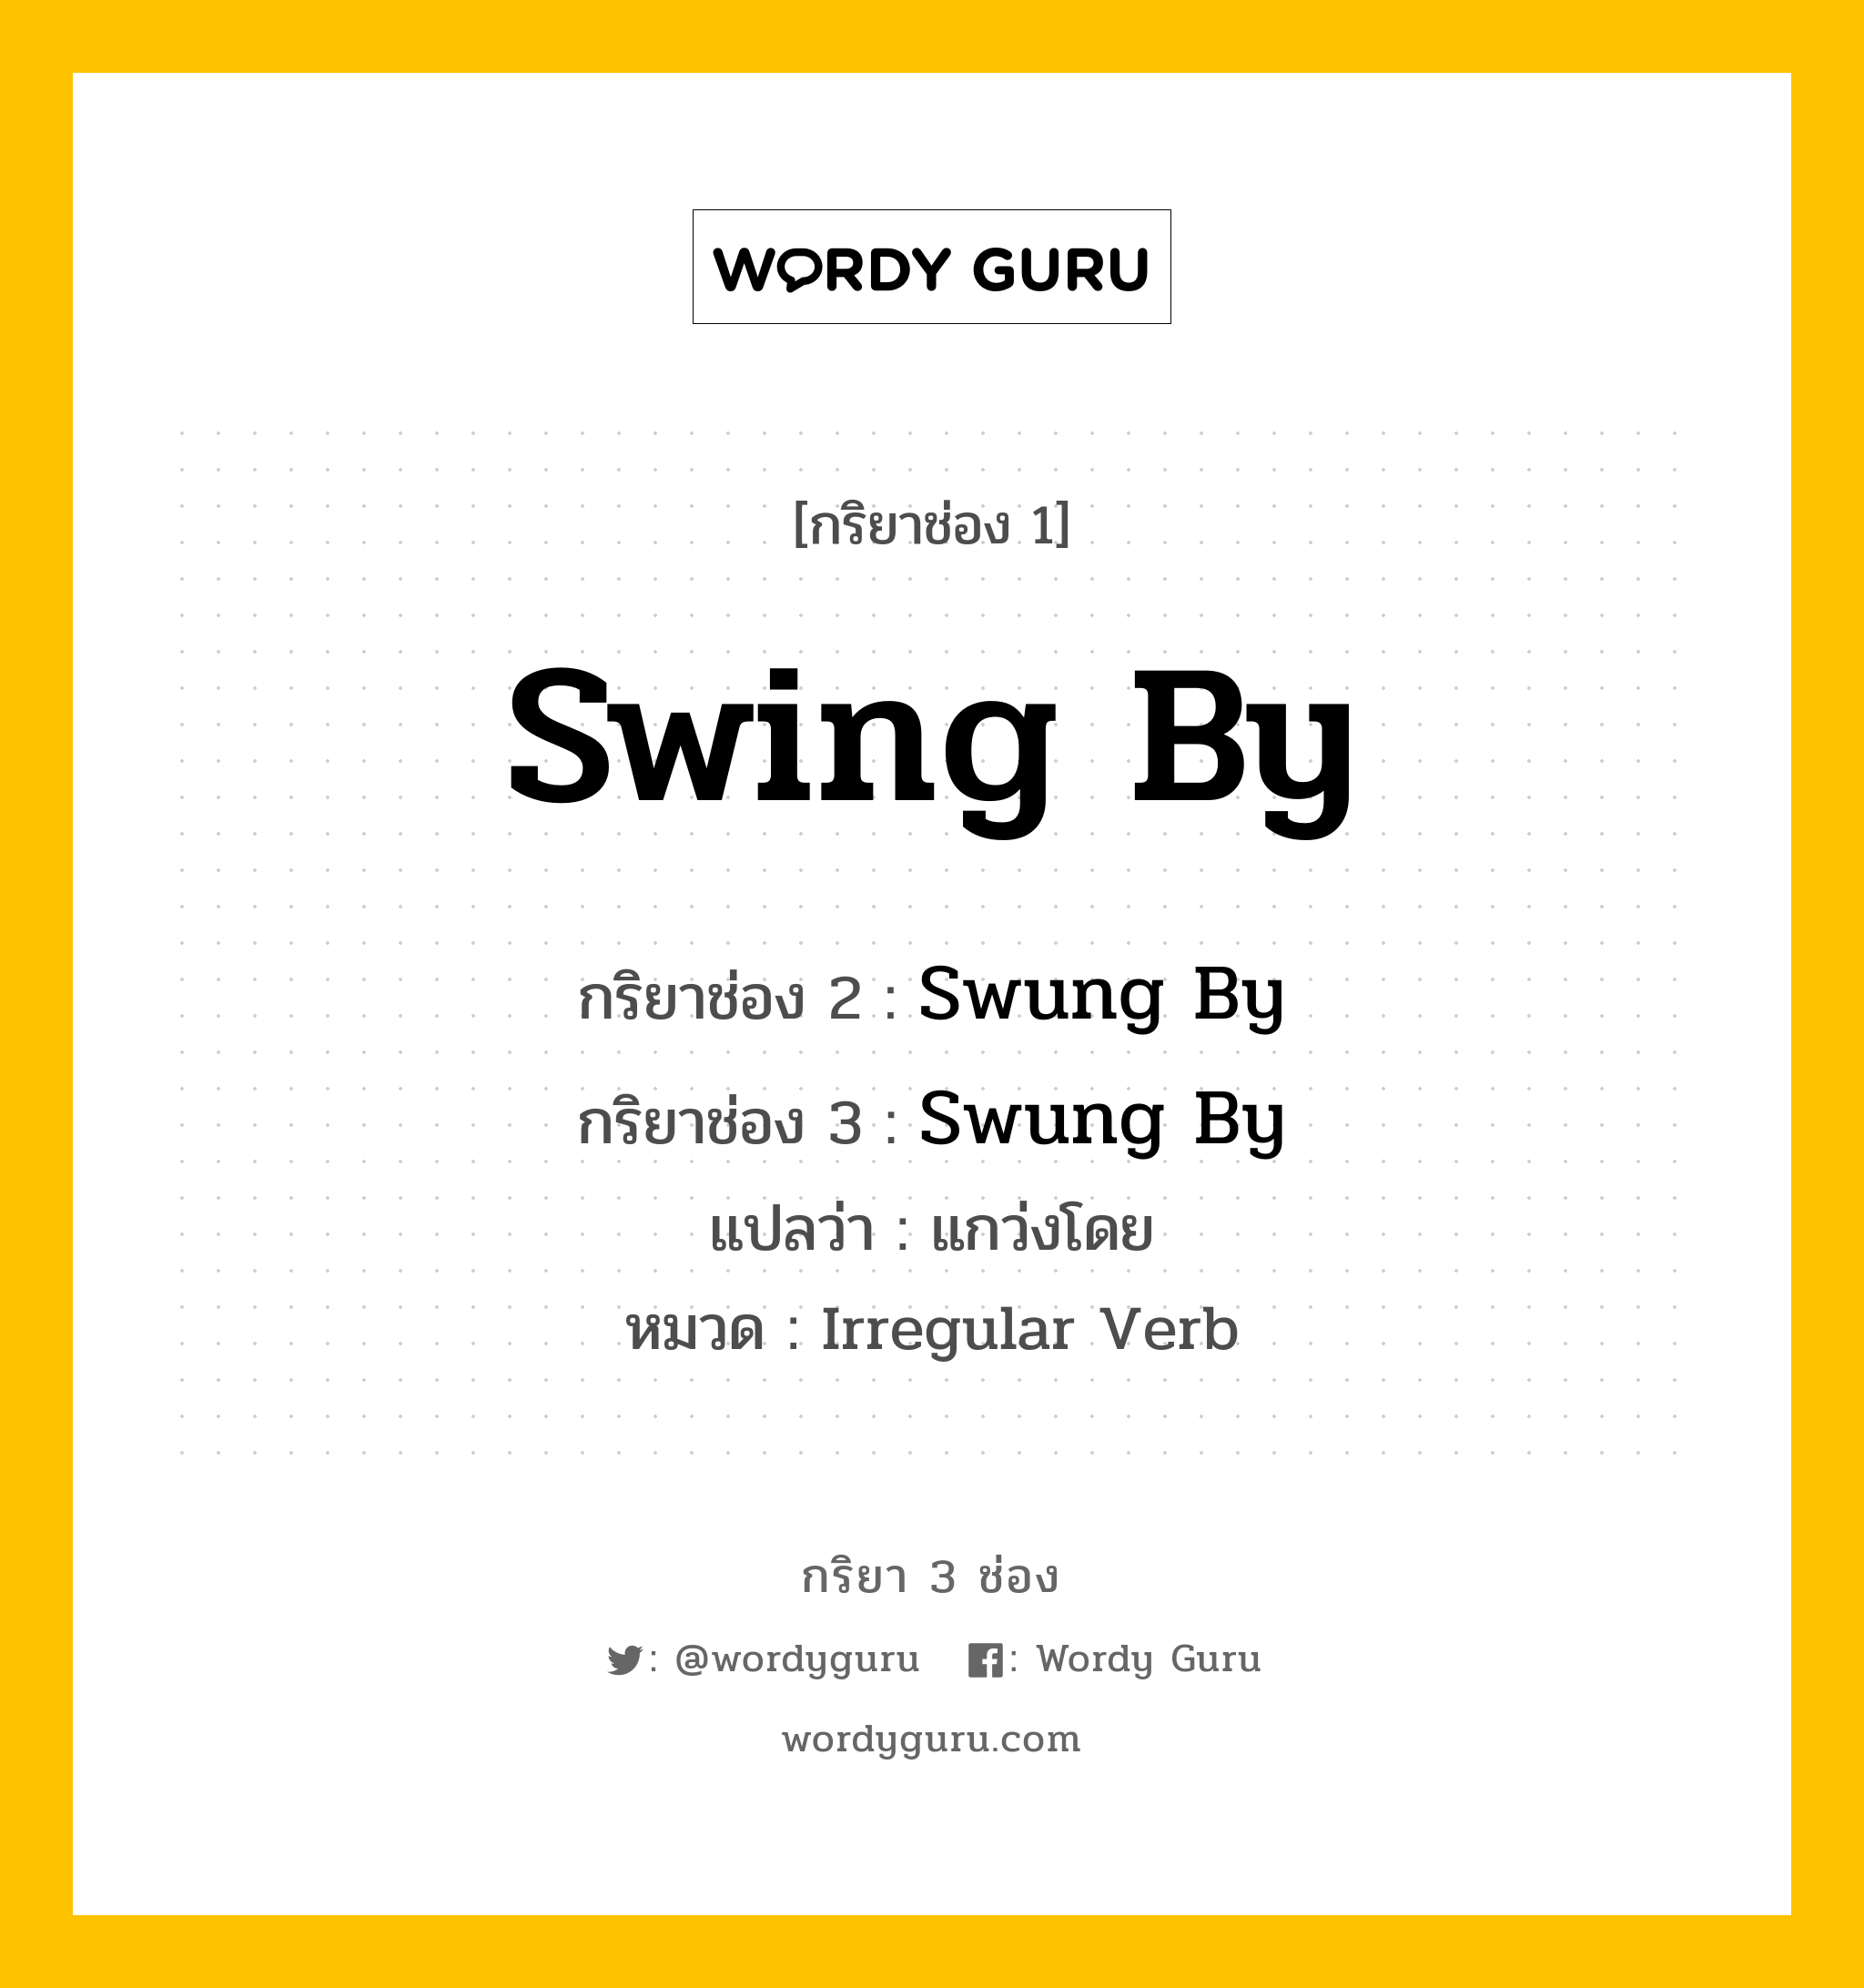 กริยา 3 ช่อง: Swing By ช่อง 2 Swing By ช่อง 3 คืออะไร, กริยาช่อง 1 Swing By กริยาช่อง 2 Swung By กริยาช่อง 3 Swung By แปลว่า แกว่งโดย หมวด Irregular Verb หมวด Irregular Verb